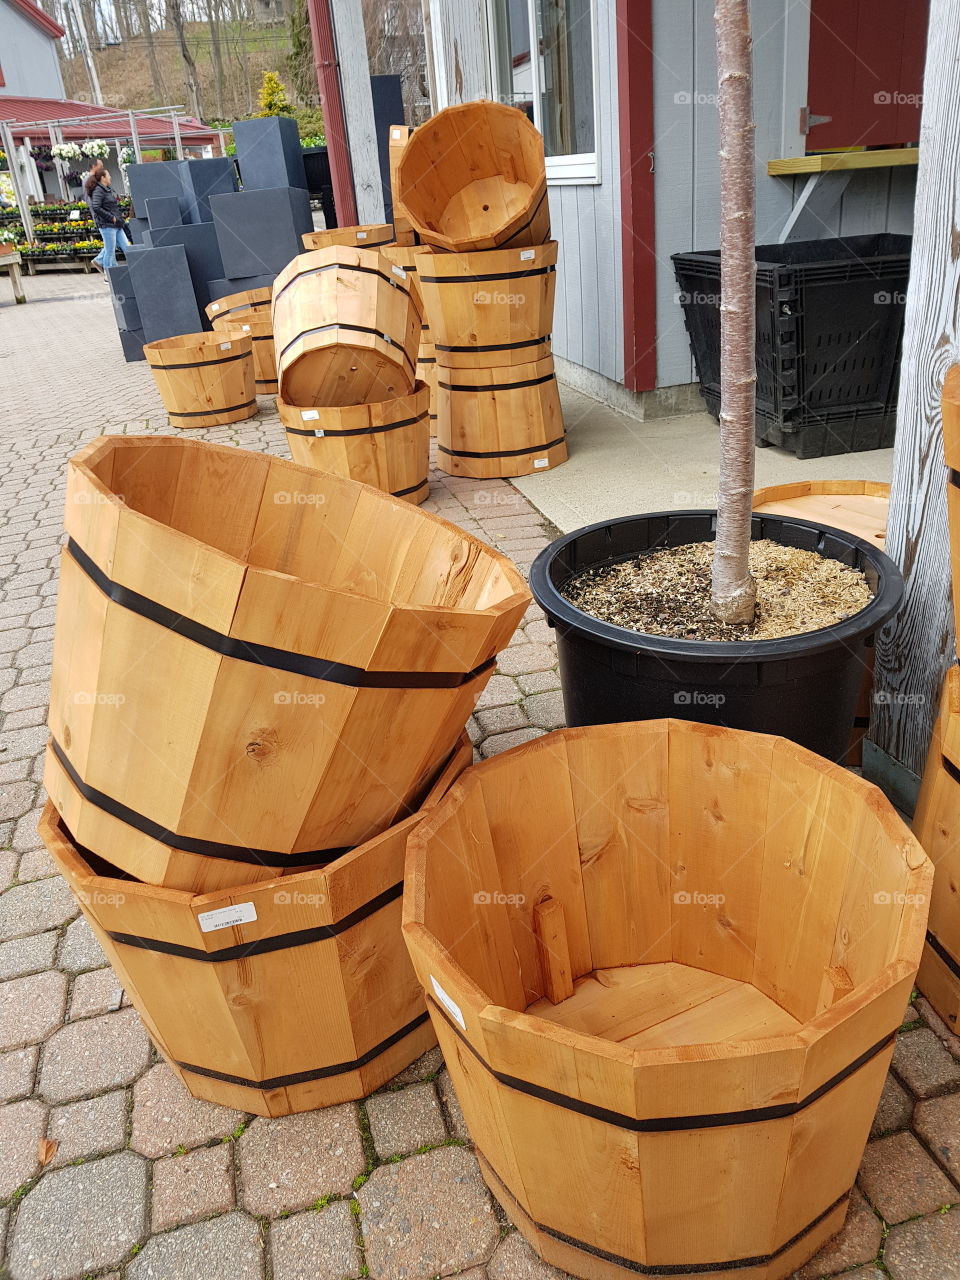 wooden pots